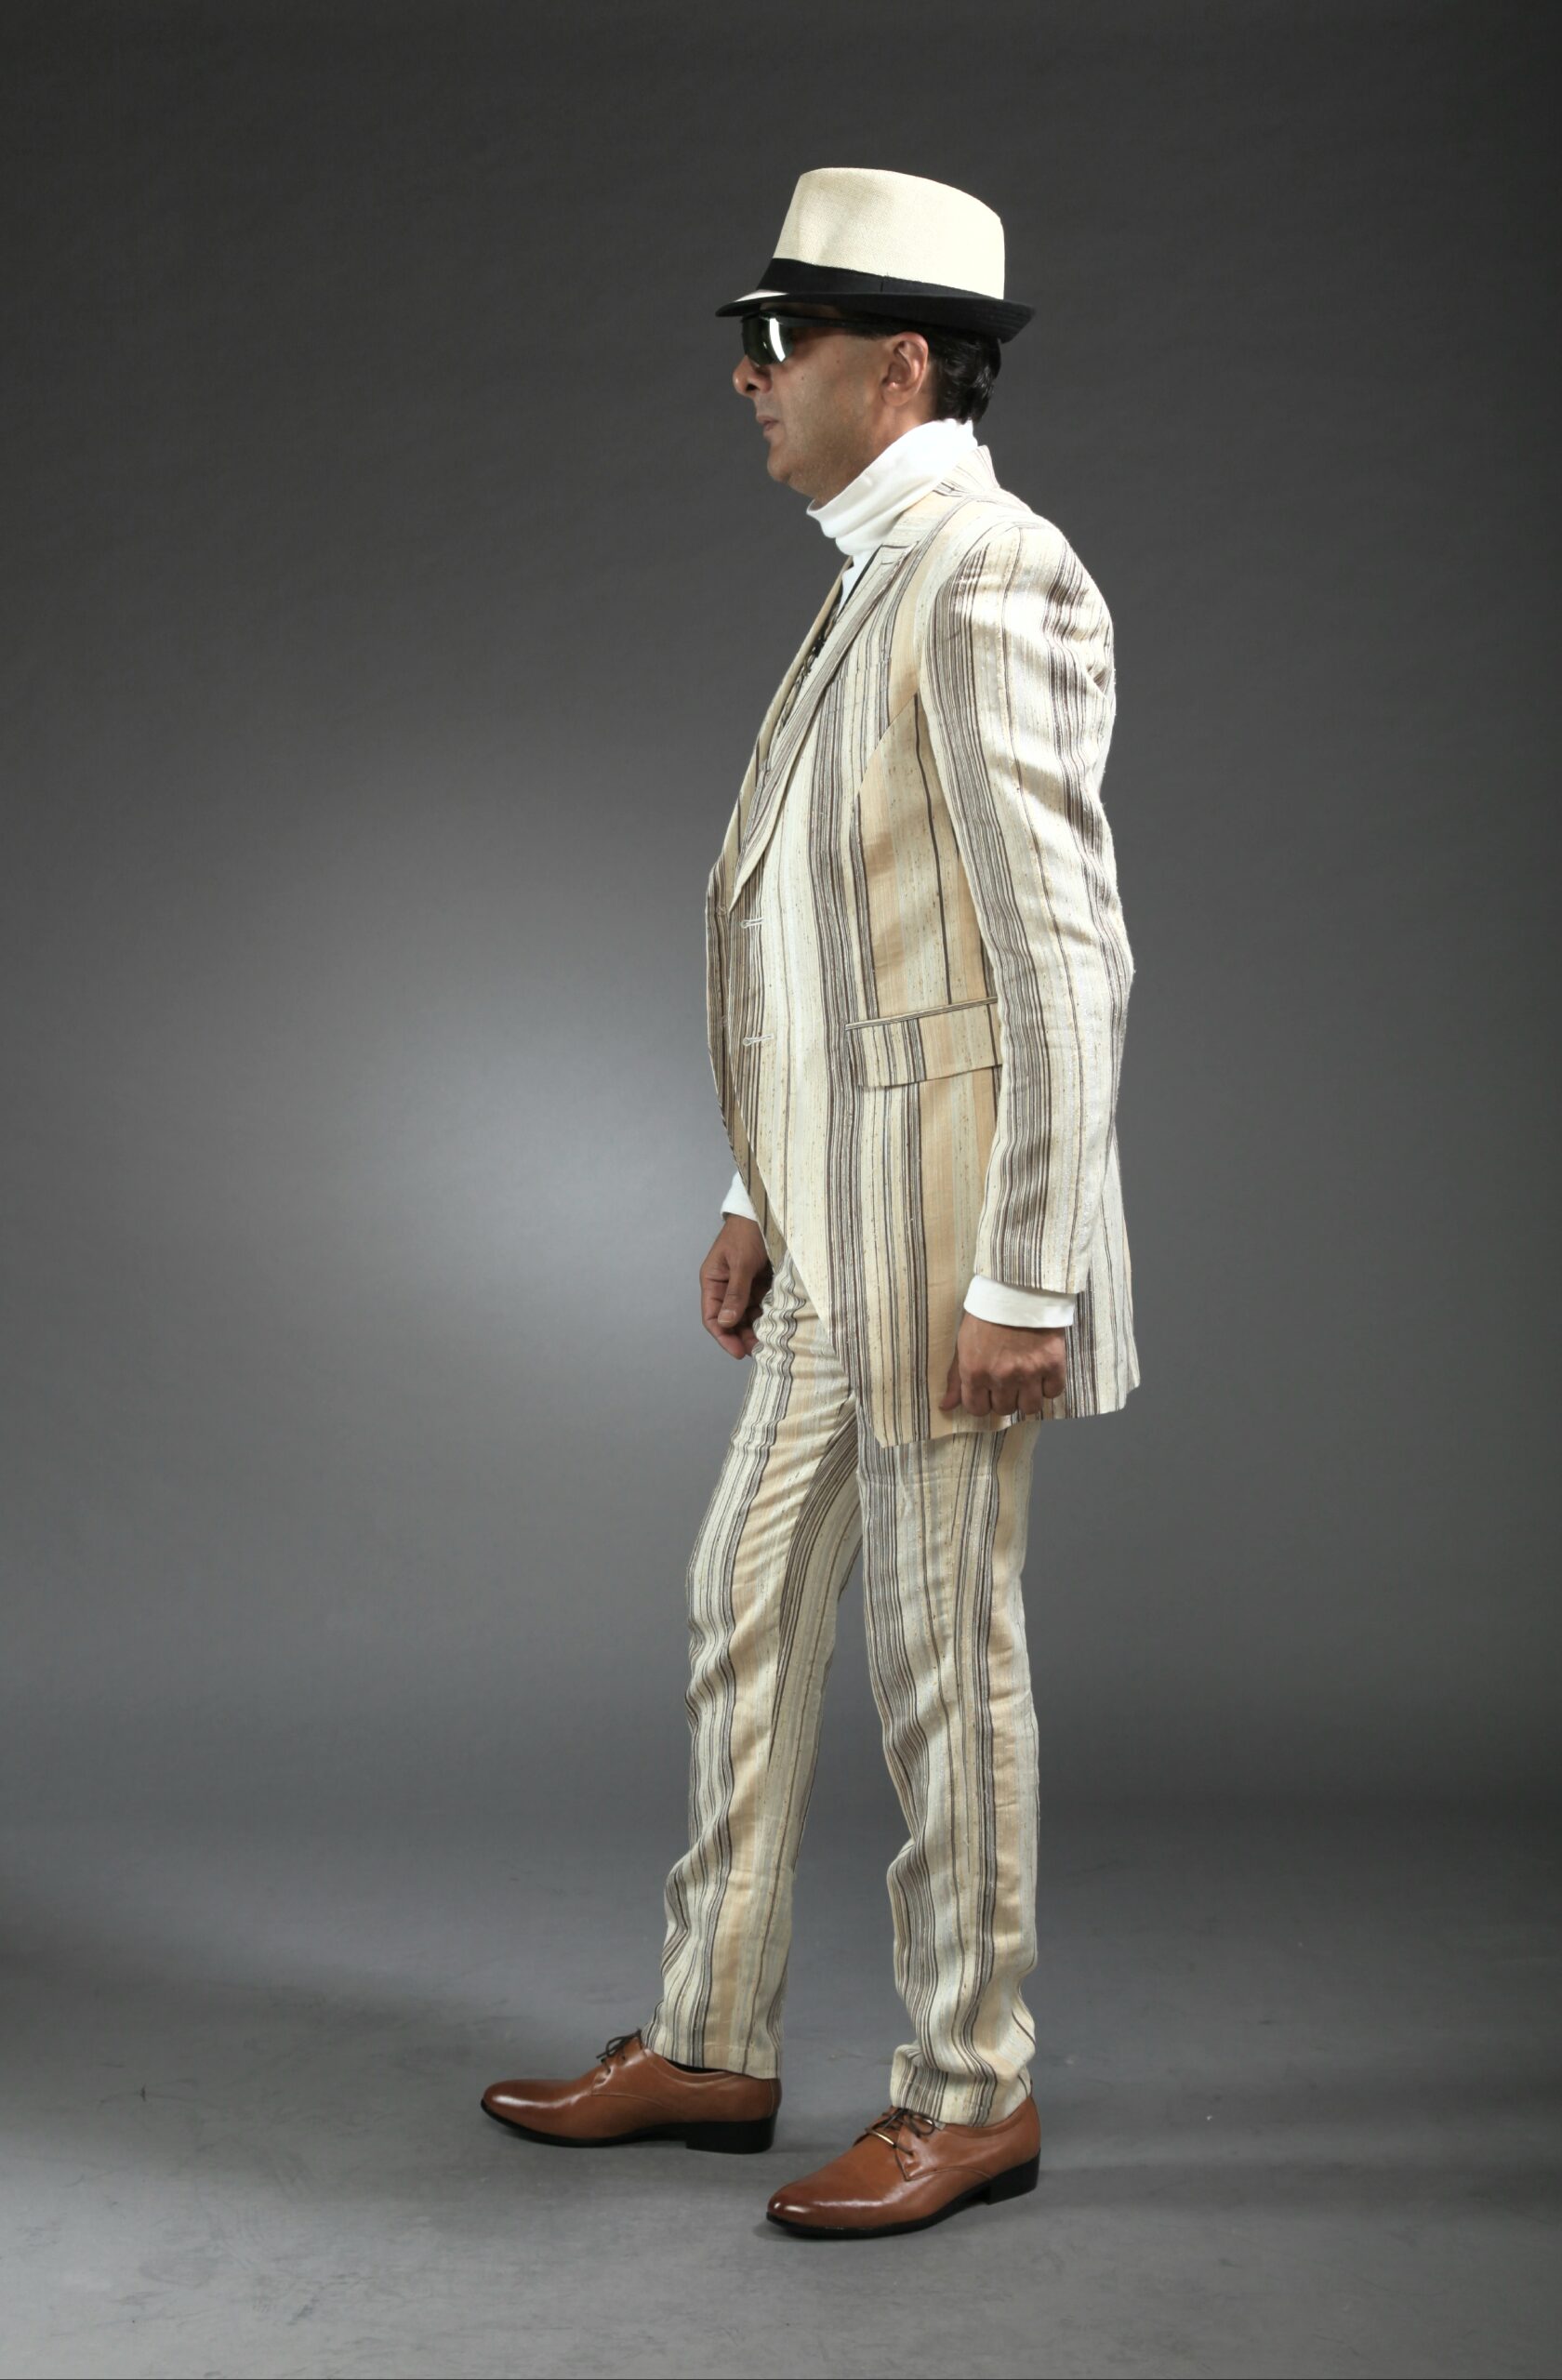 Mst 5006 02 Rent Rental Hire Tuxedo Suit Black Tie Suit Designer Suits Shop Tailor